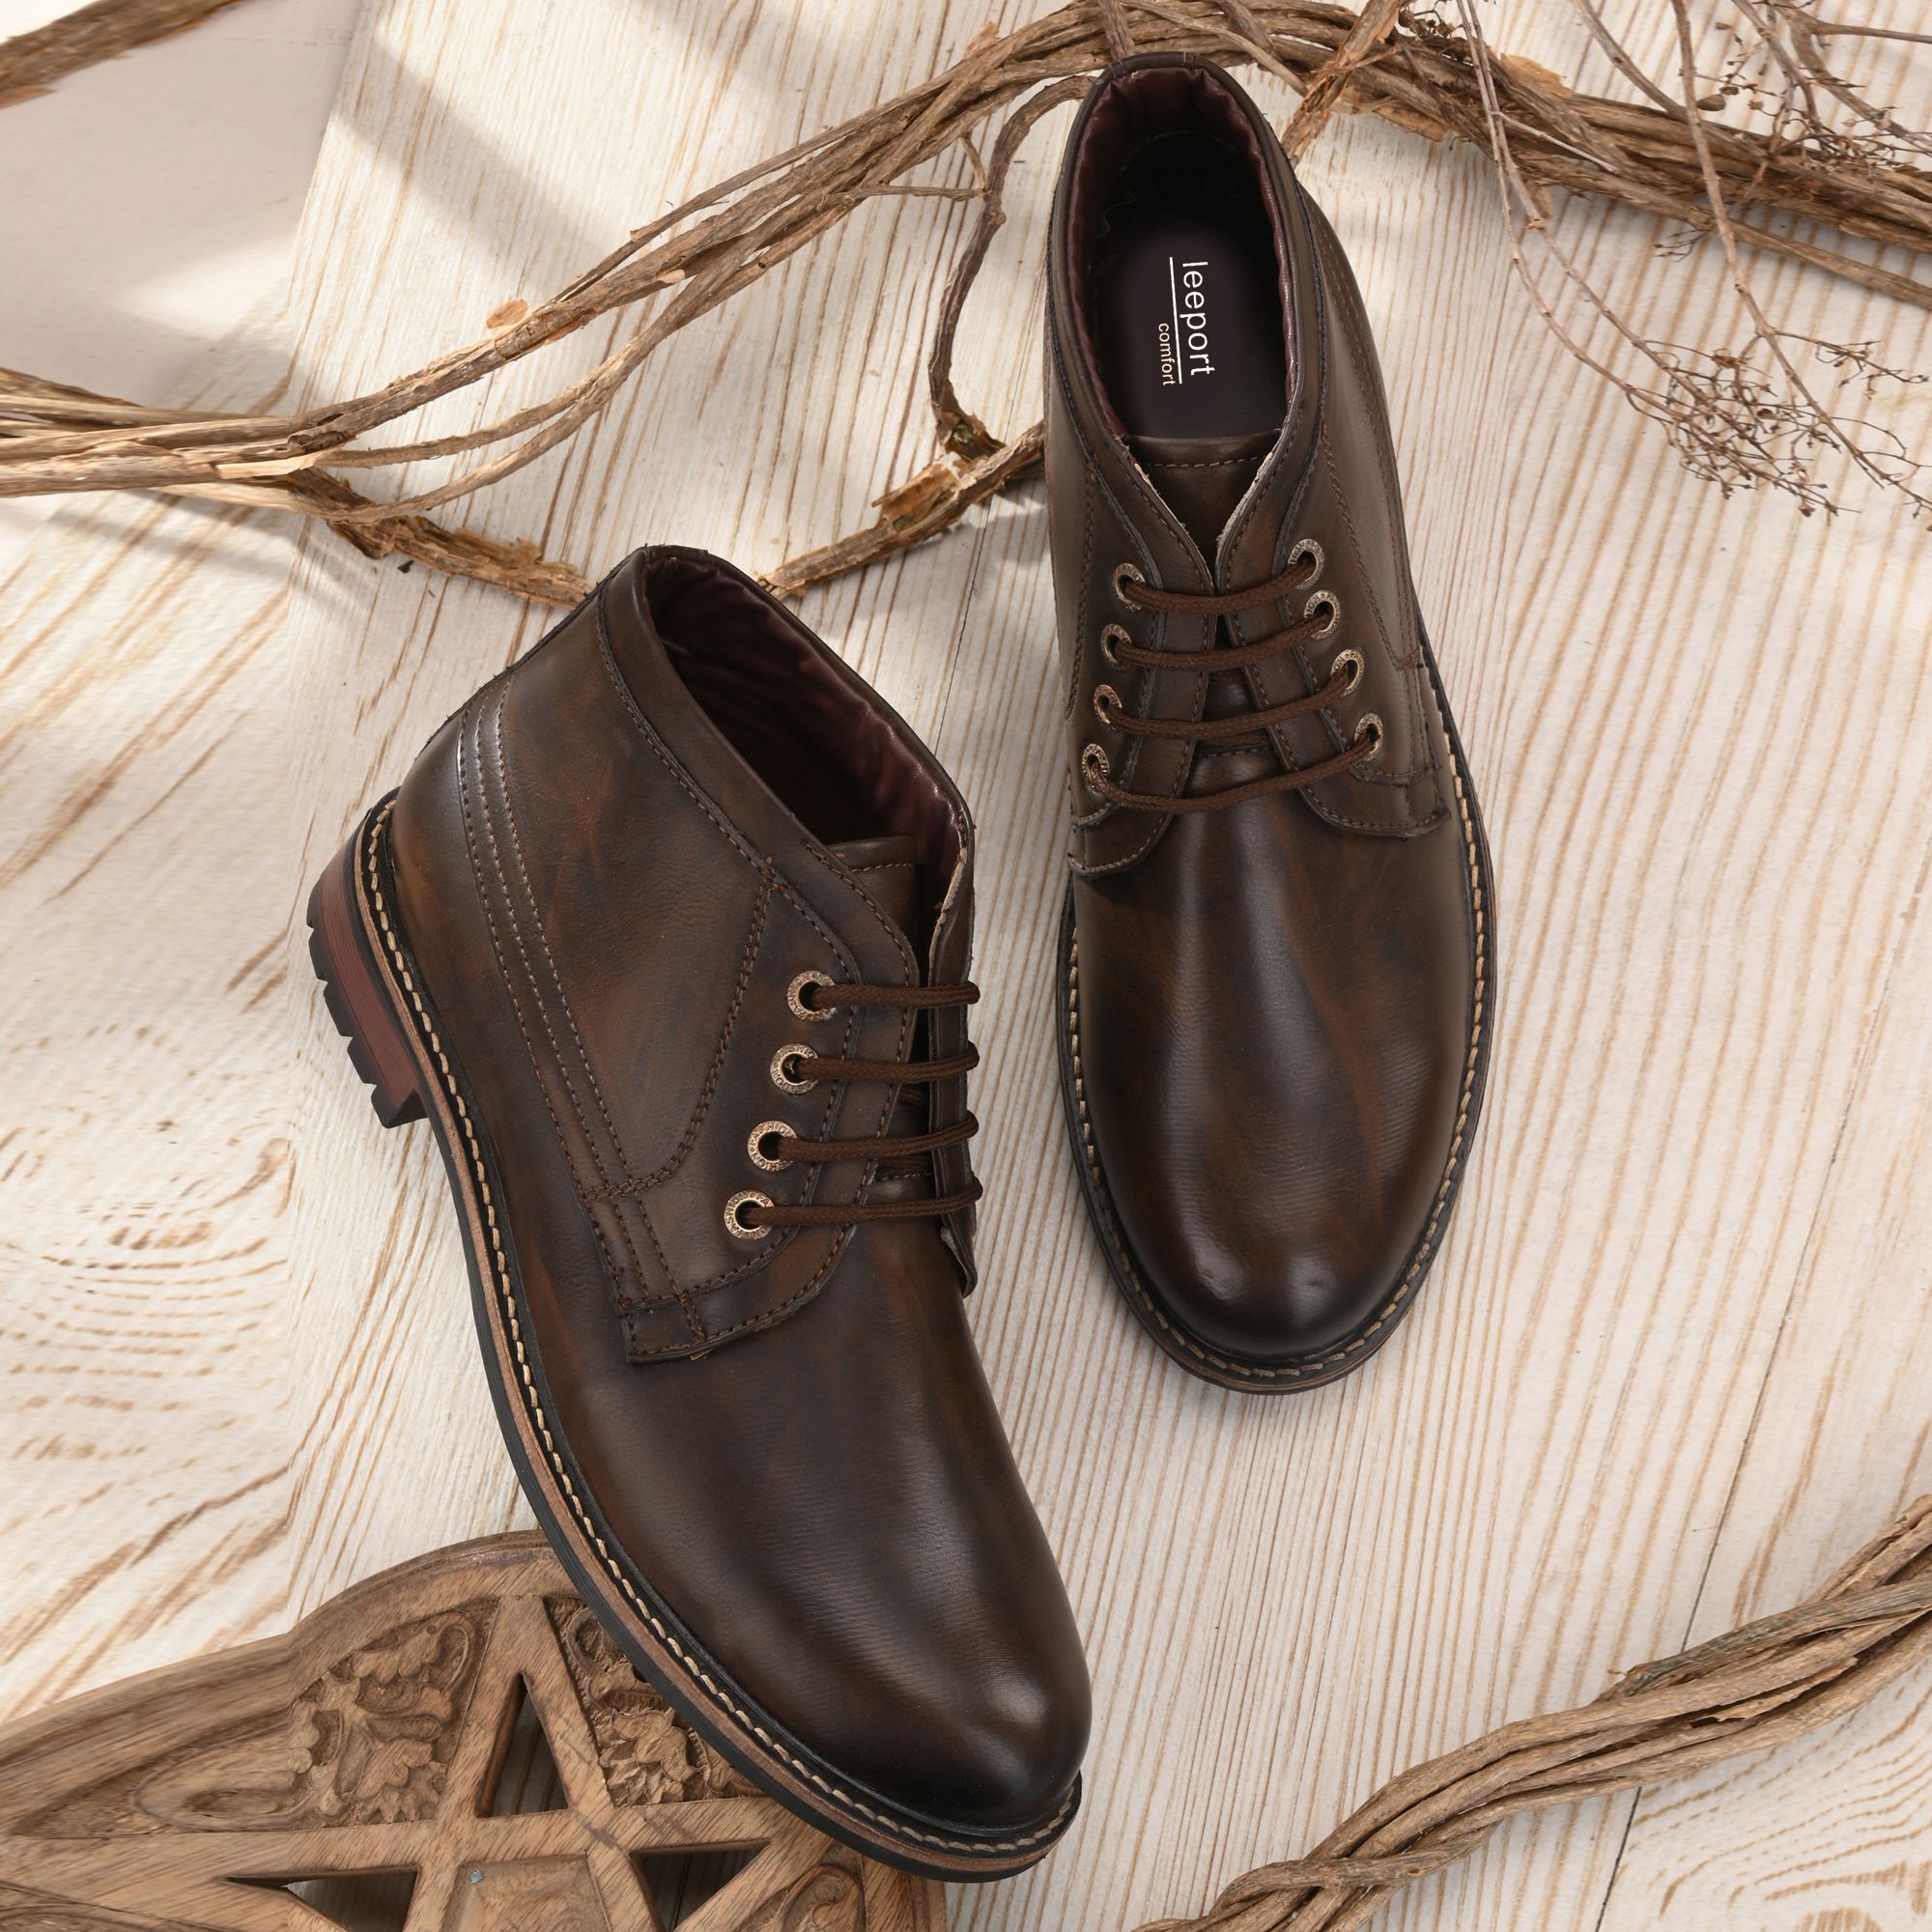     			Leeport - Brown Men's Chukka Boots